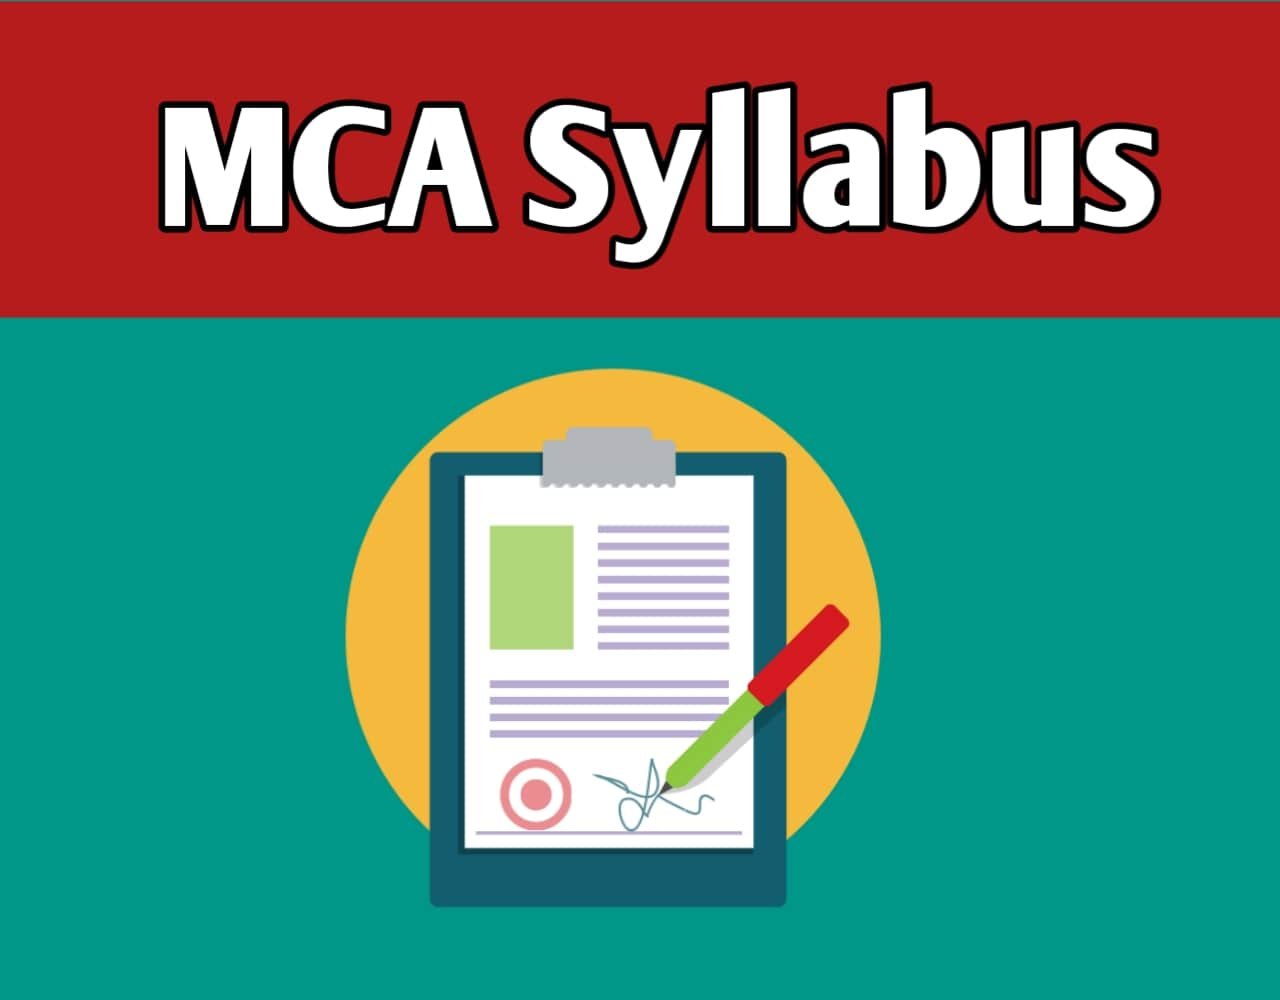 MCA Syllabus in Hindi | MCA में कितने सब्जेक्ट होते हैं?